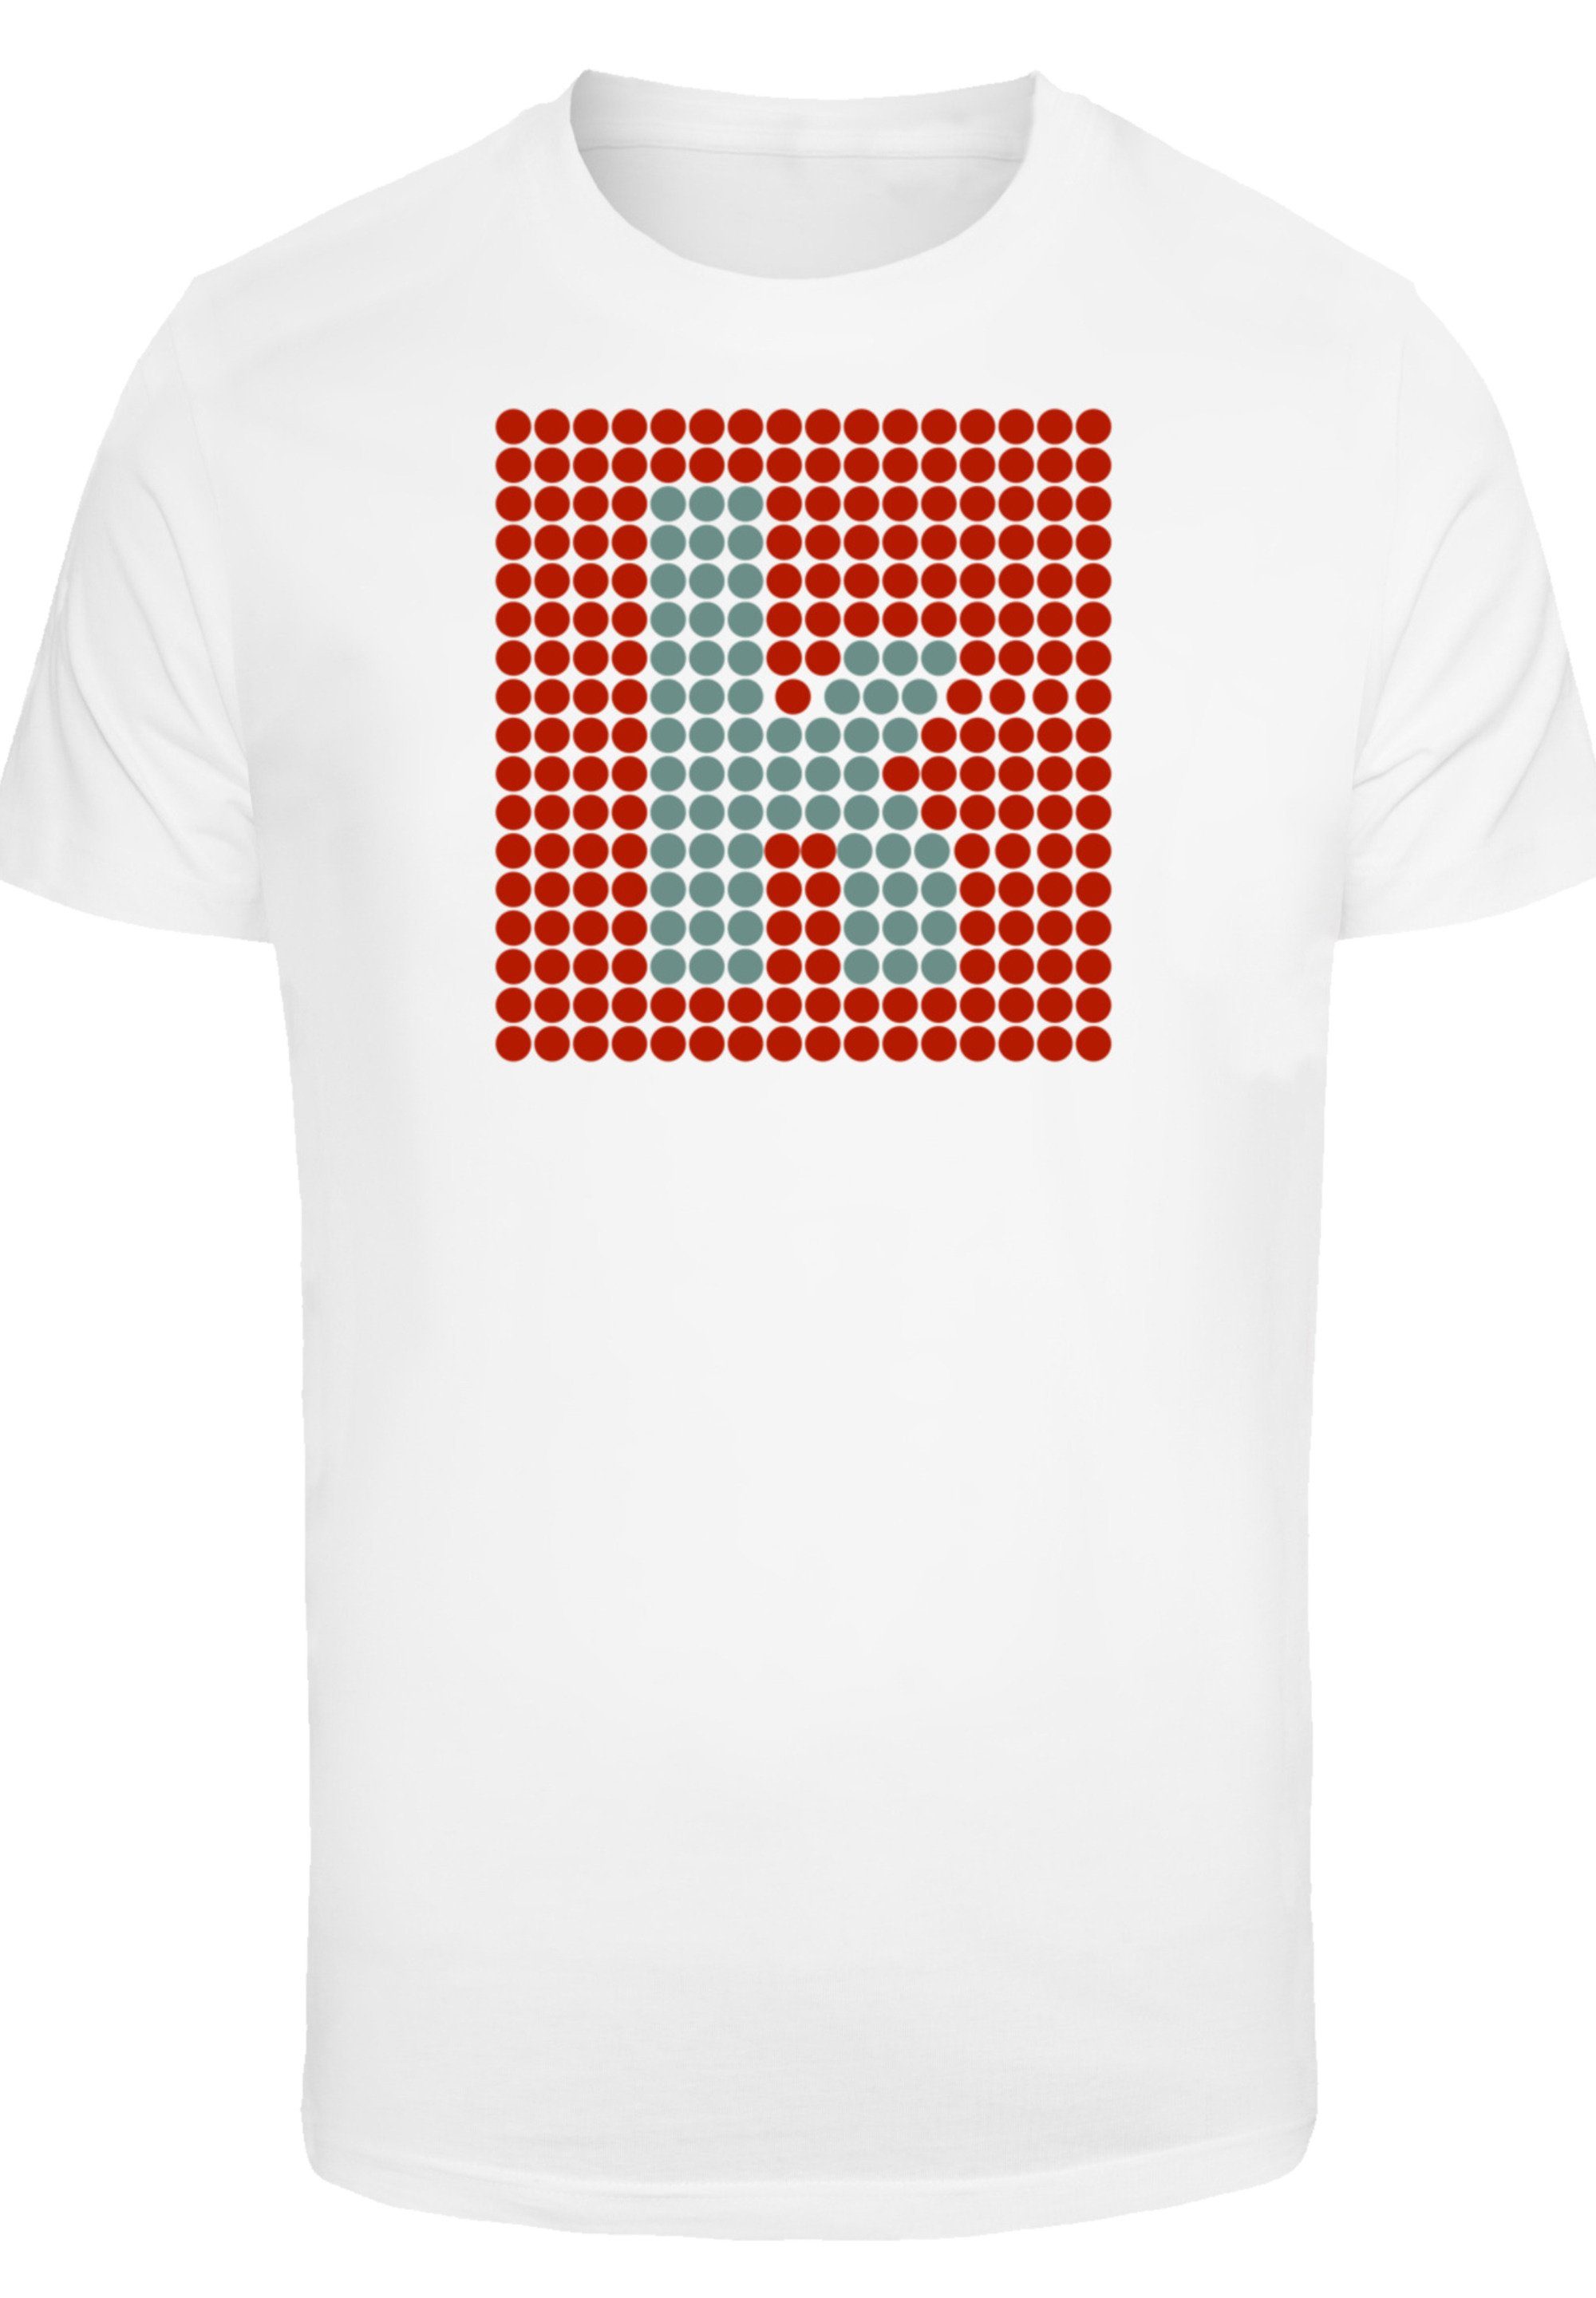 F4NT4STIC T-Shirt The Killers Print